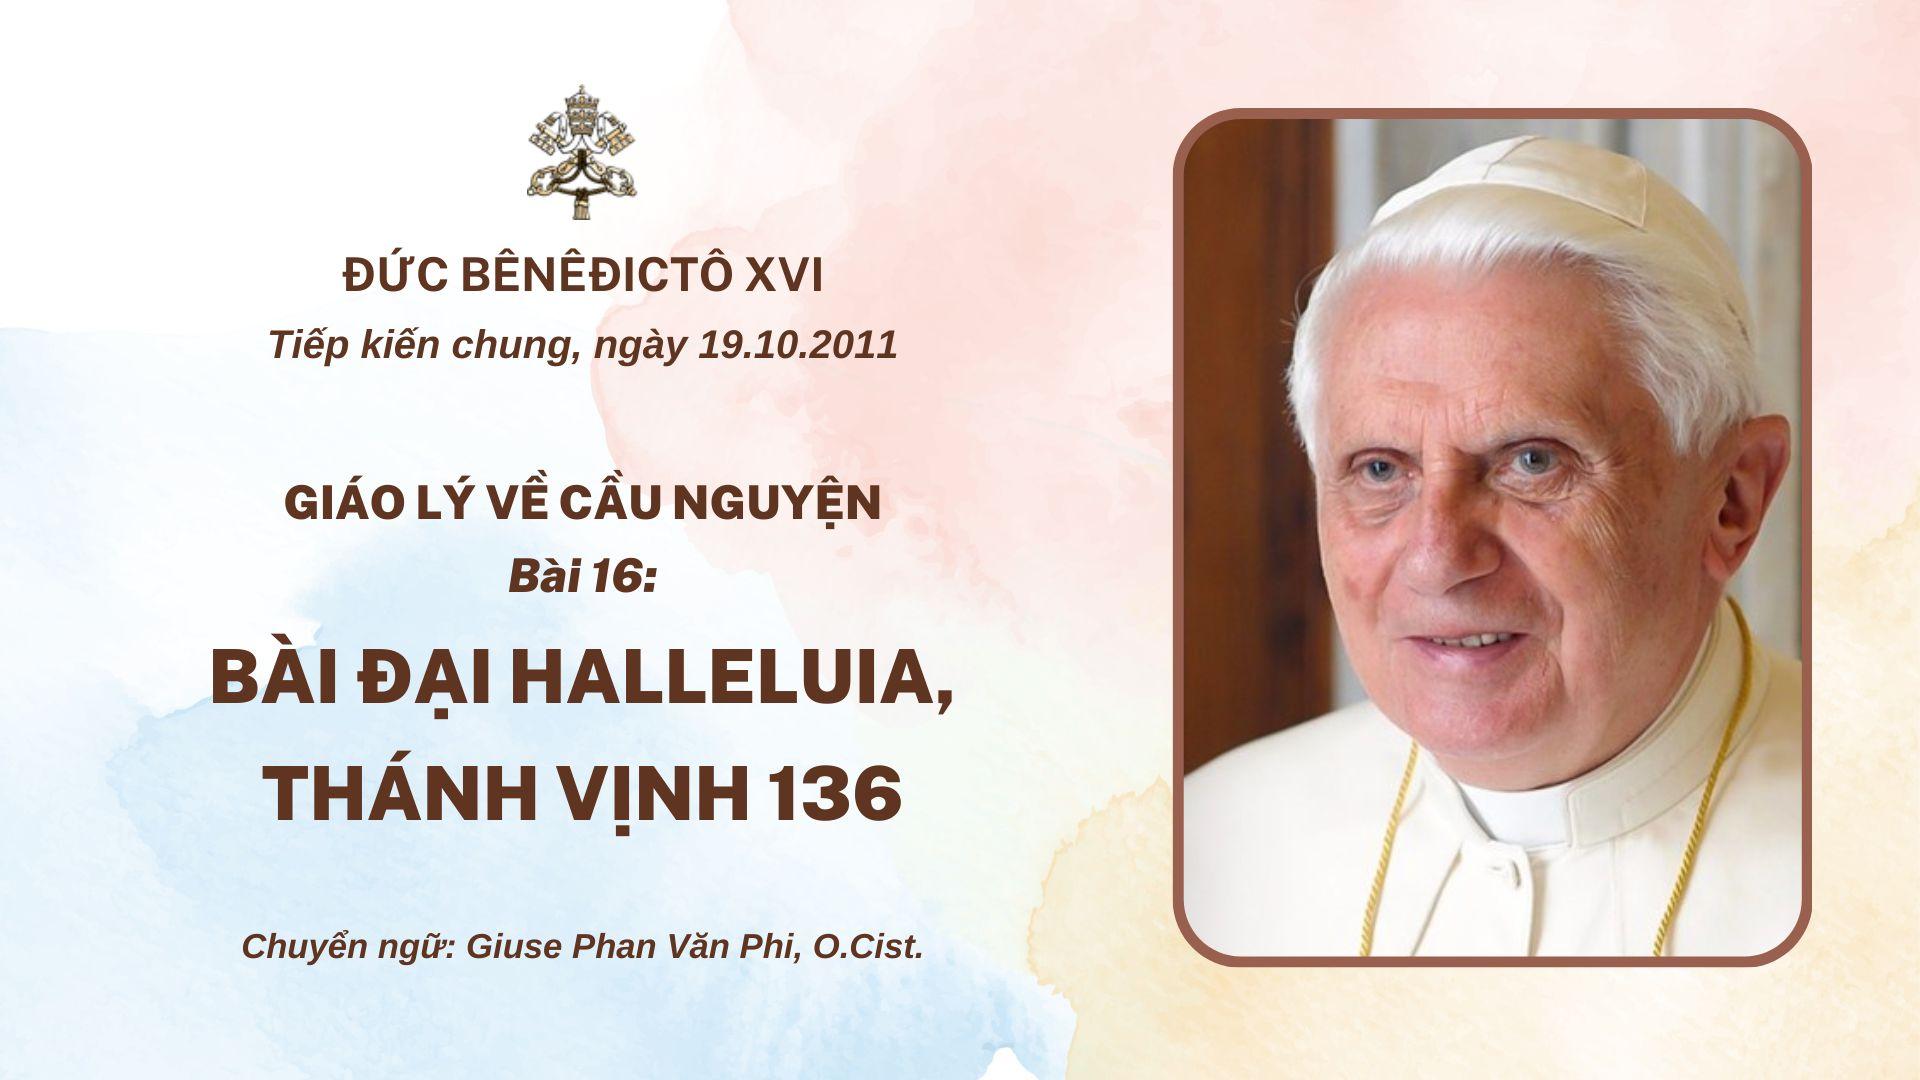 Giáo lý về cầu nguyện của Đức Bênêđictô XVI - Bài 16: Bài Đại Halleluia, Thánh vịnh 136